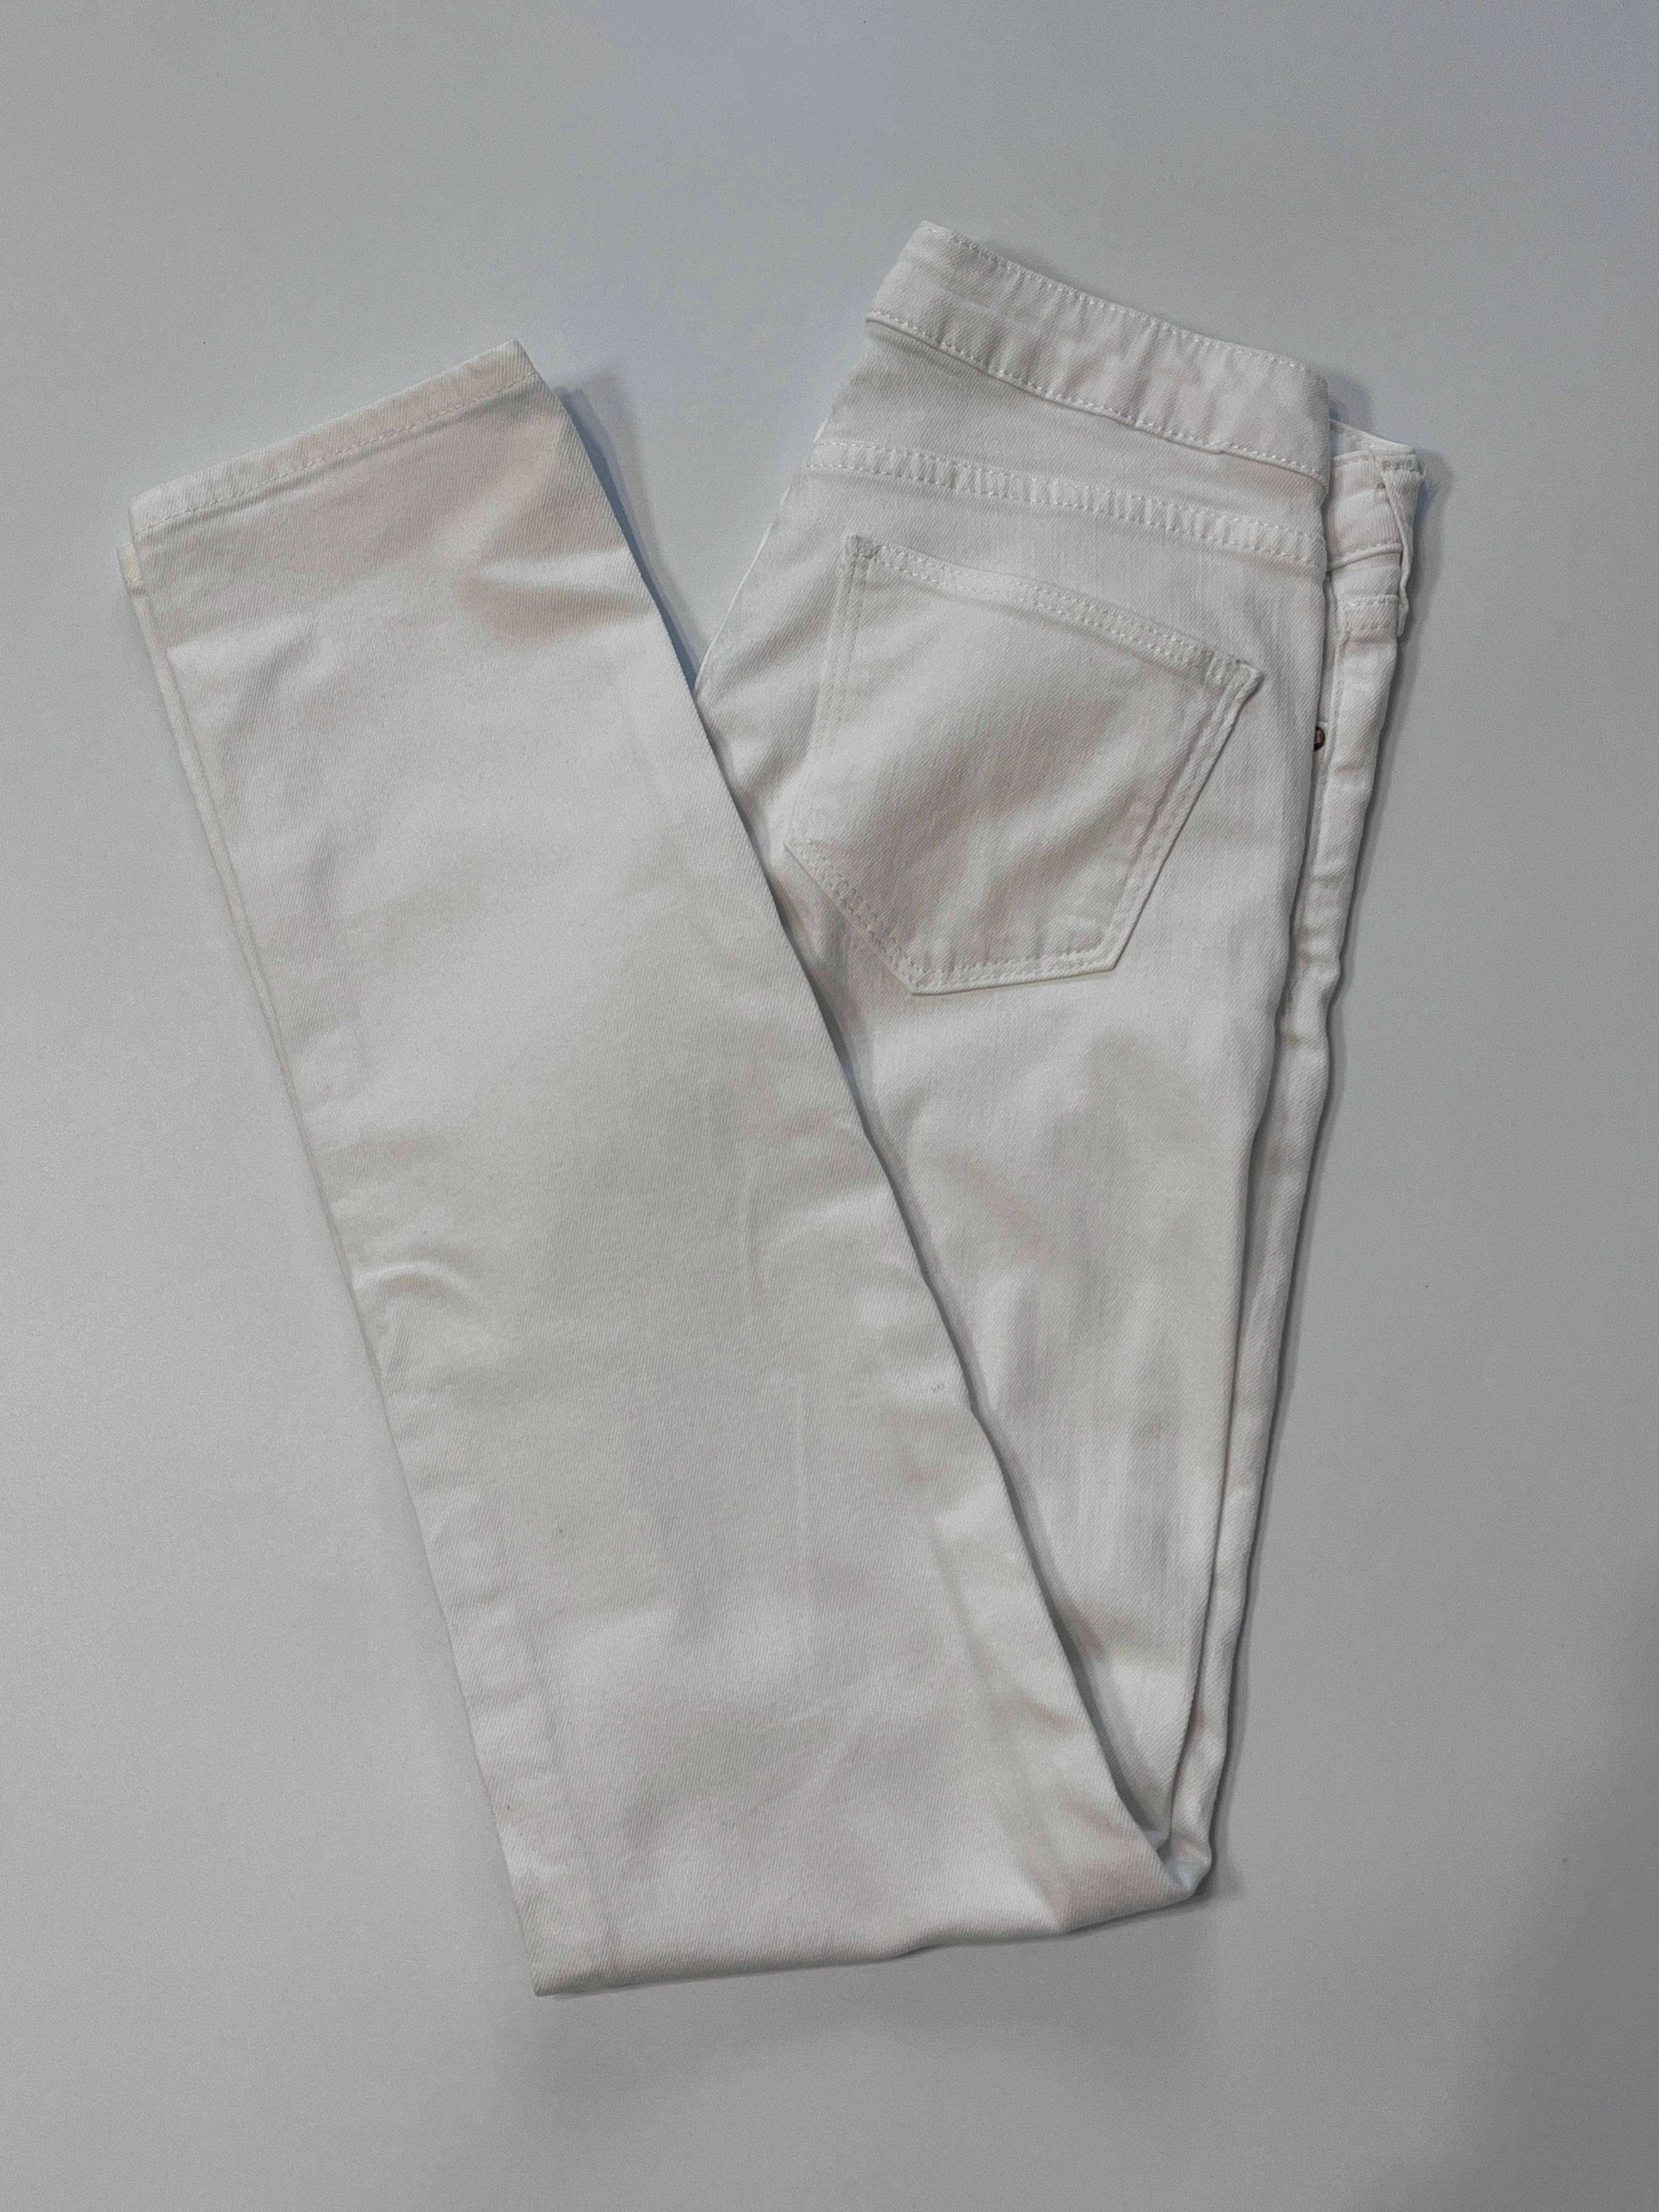 spodnie białe jeans damskie xs